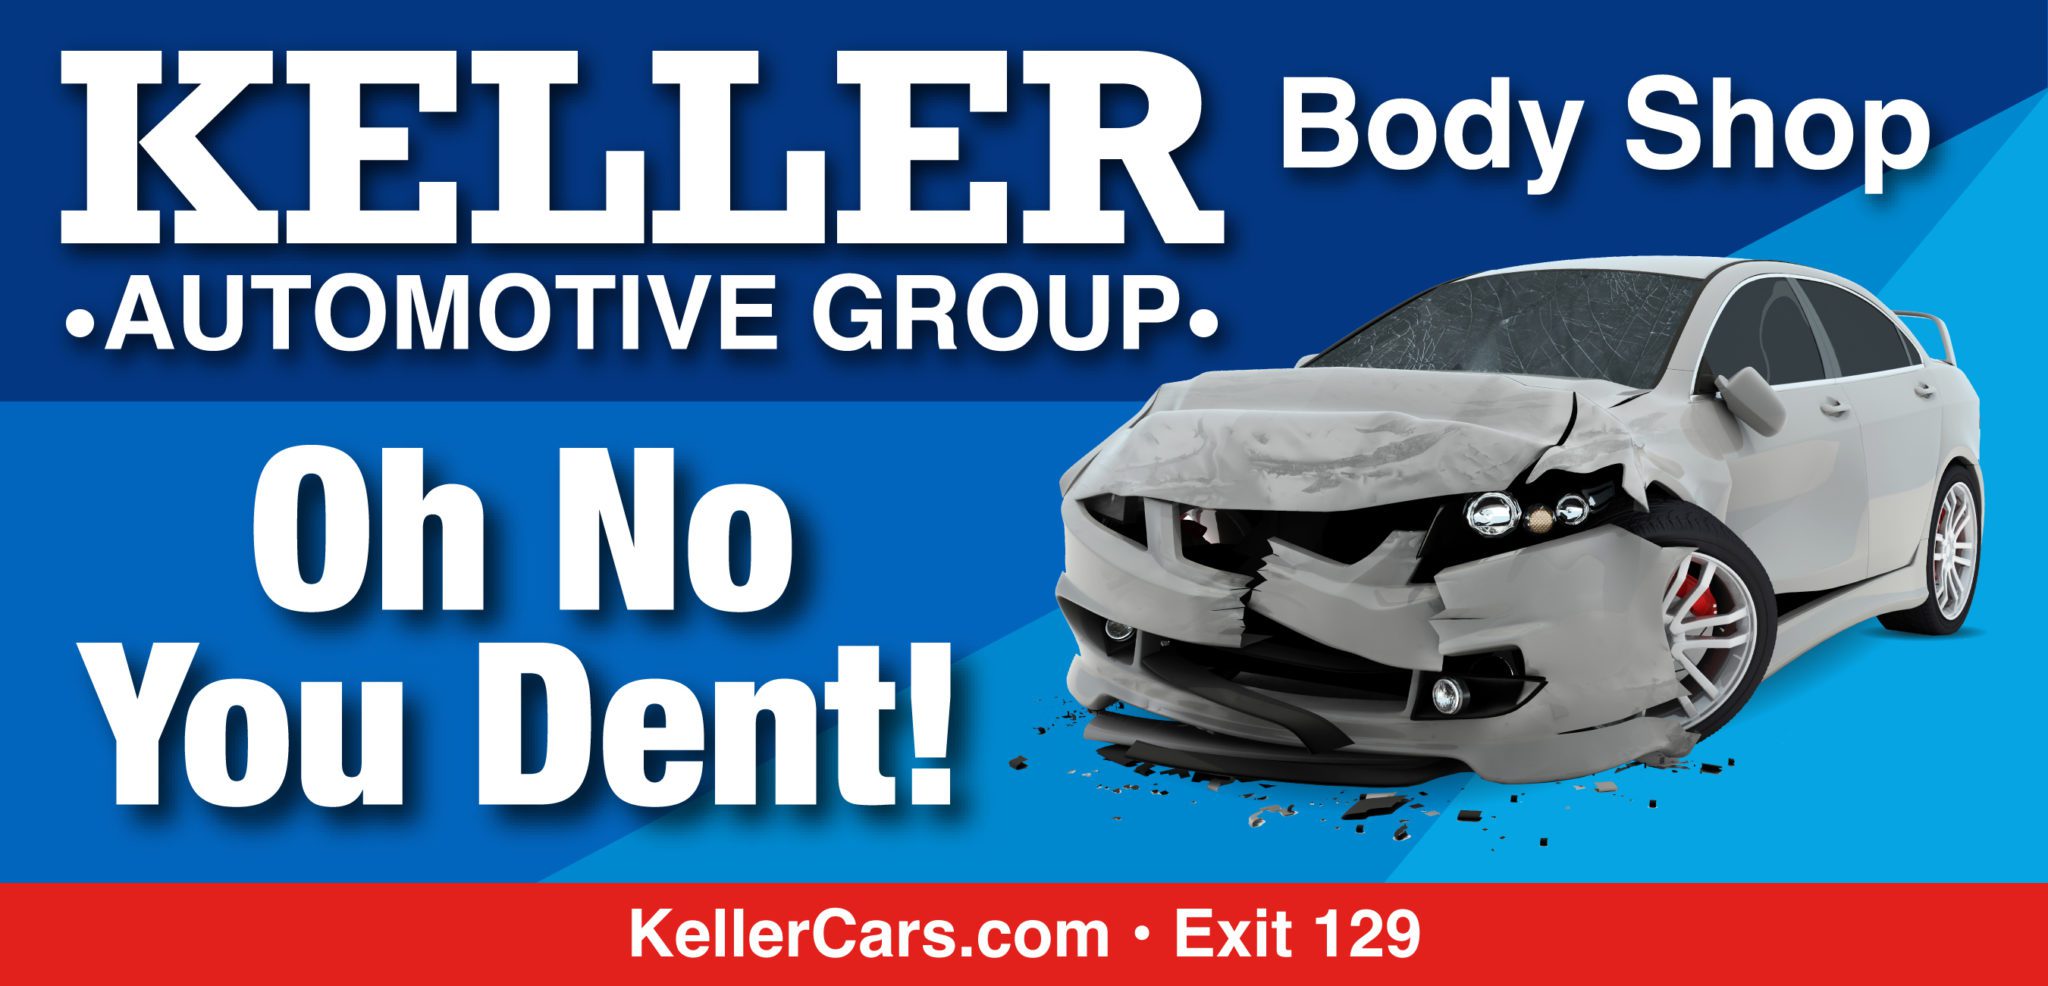 Digital billboard ad for Keller Automotive Group